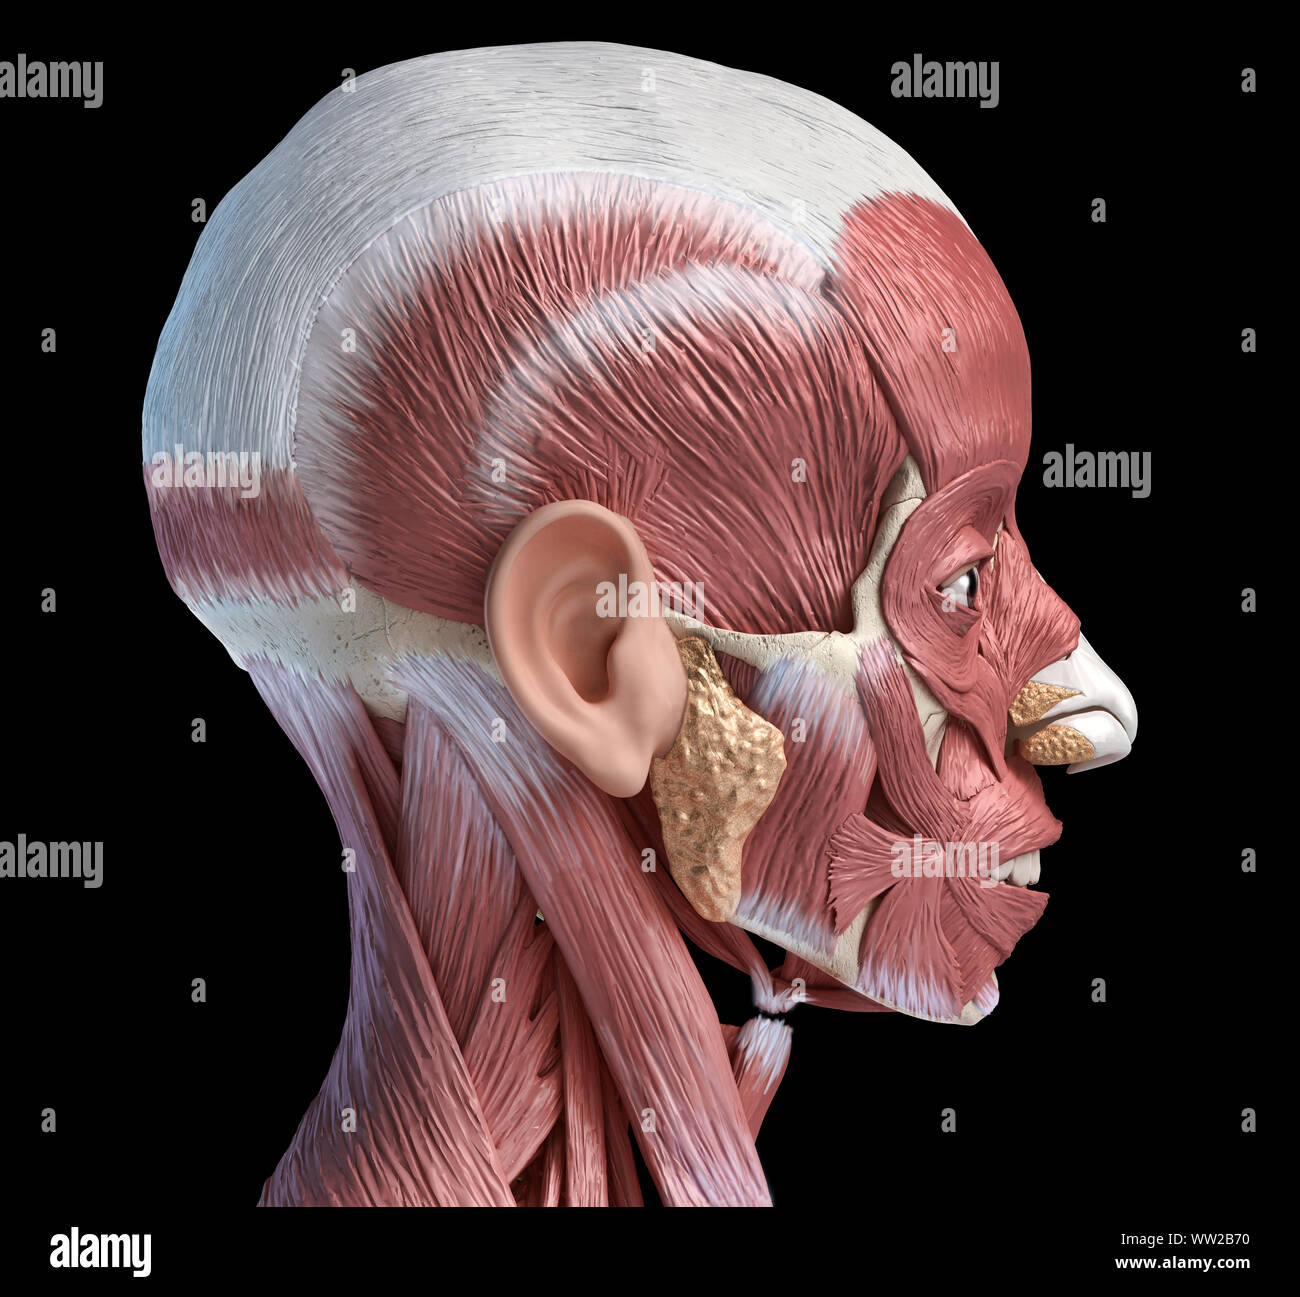 Tête humaine anatomy 3d illustration système musculaire, vue latérale sur fond noir. Banque D'Images